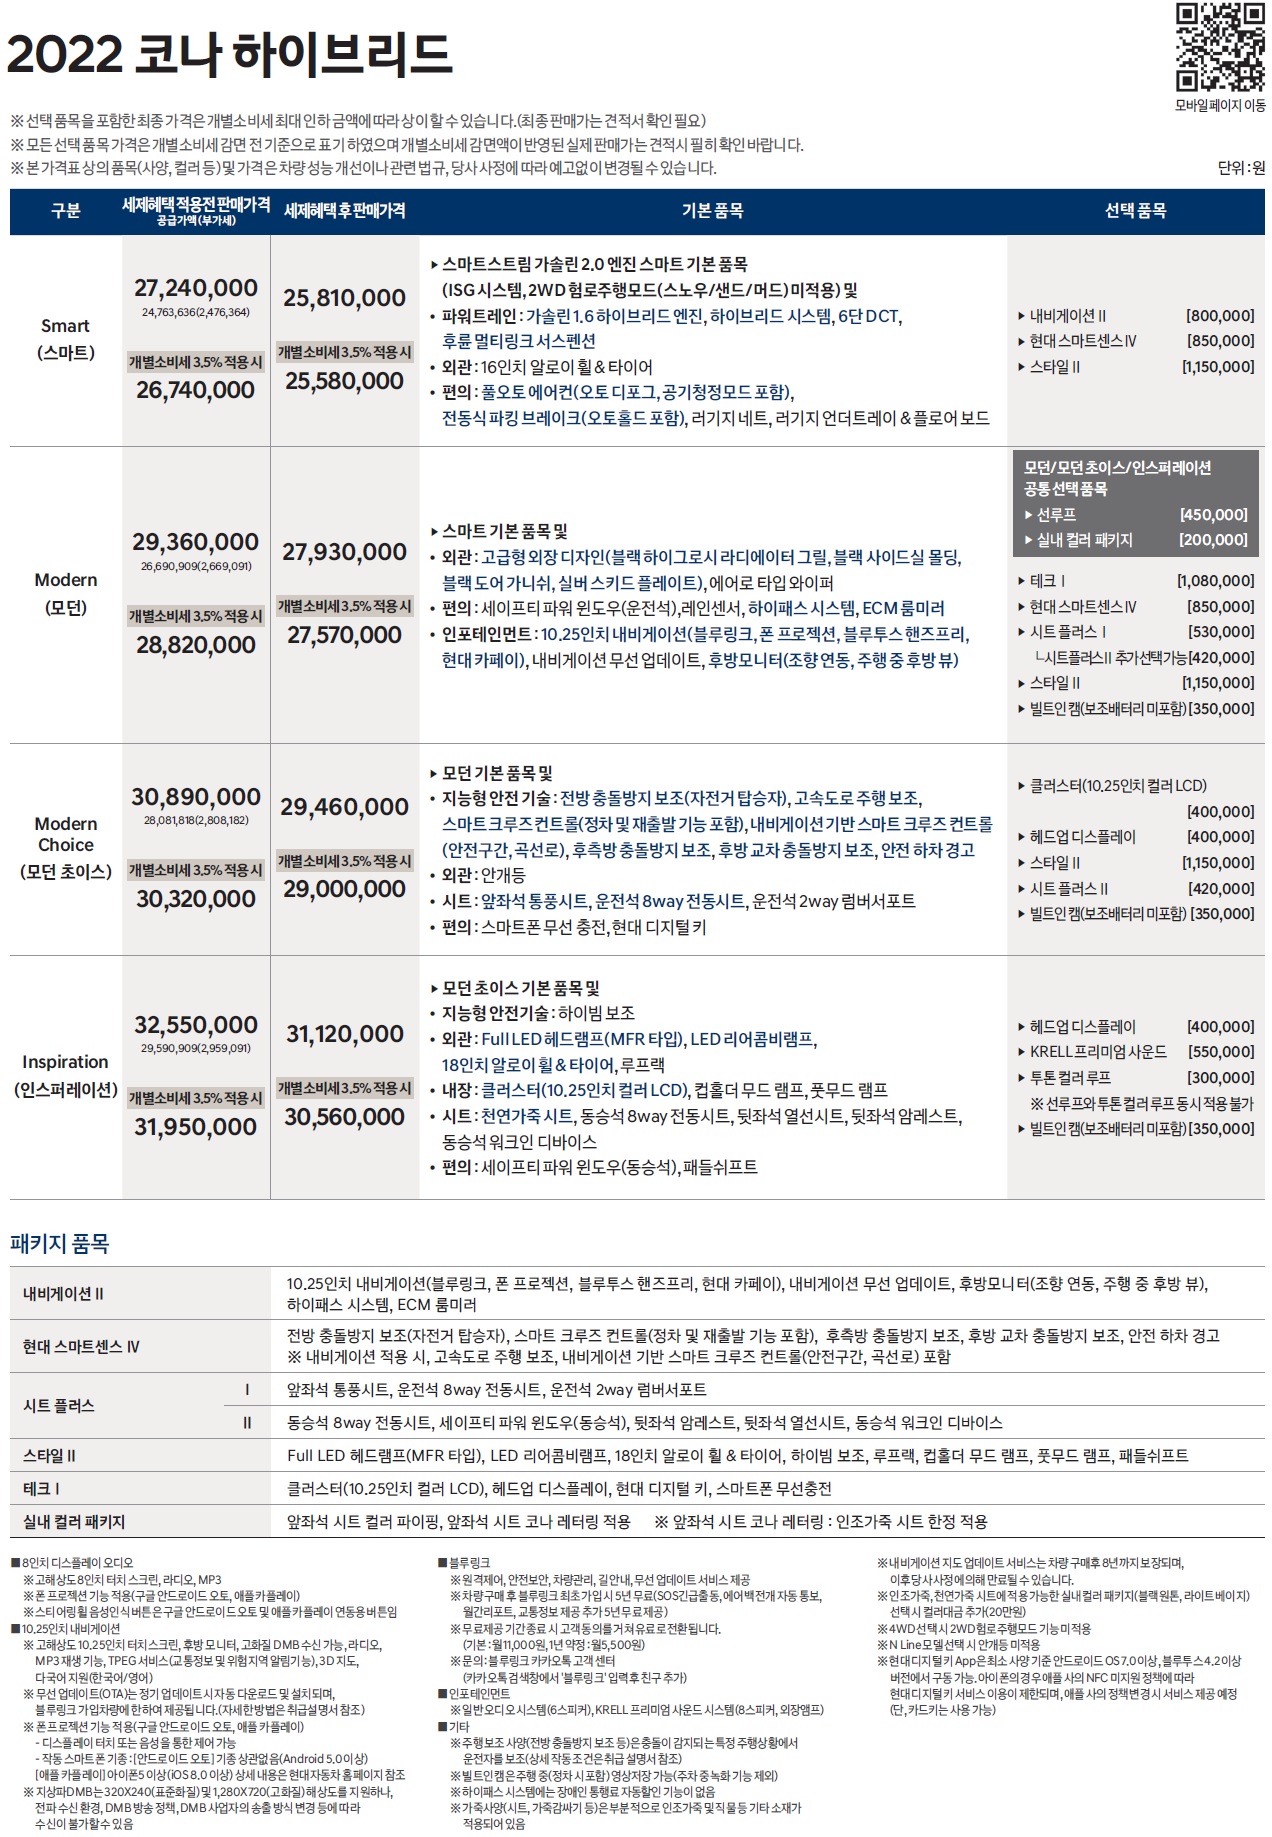 코나 가격표 - 2022년형 (2022년 04월) -2.jpg